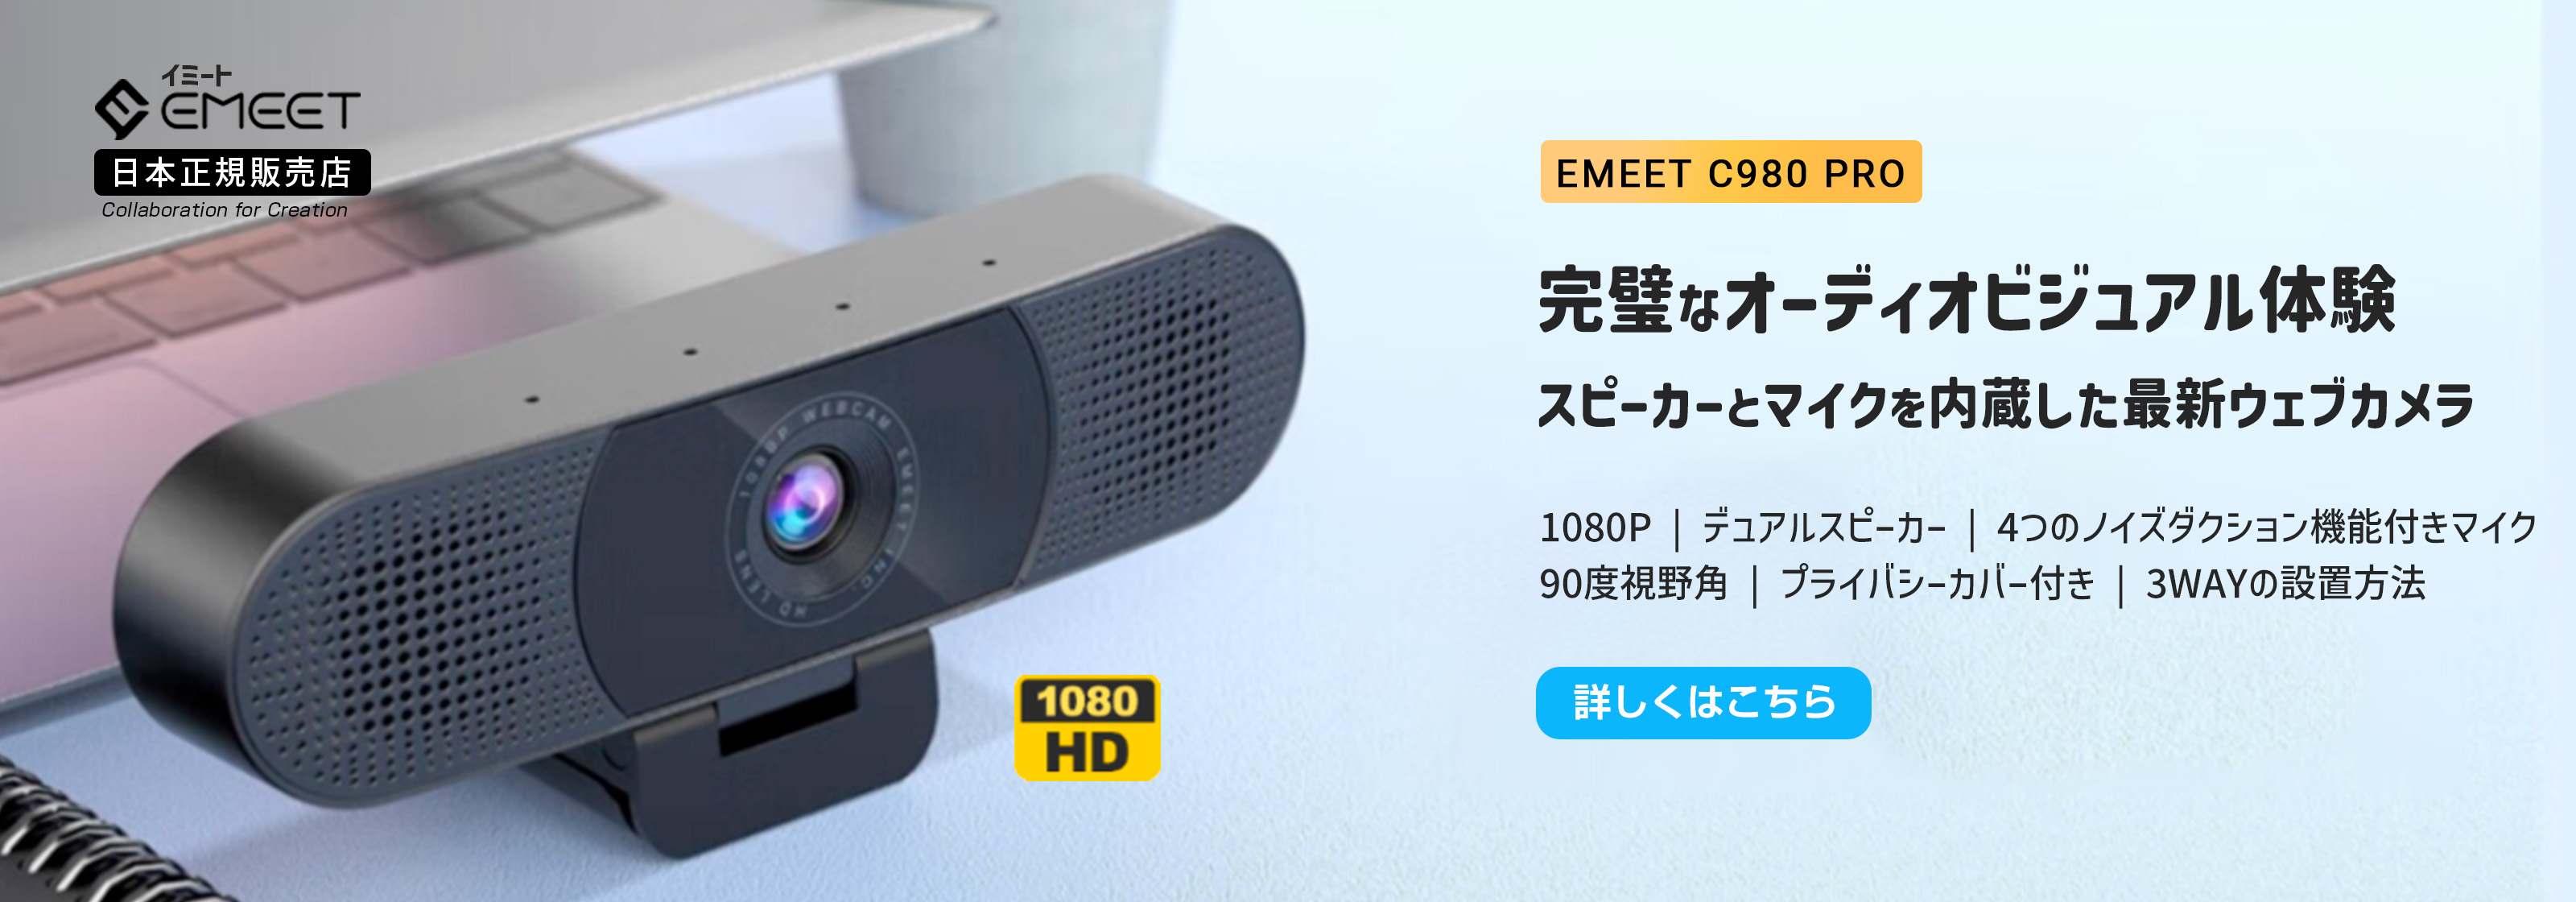 EMEET C980 Pro ウェブカメラ